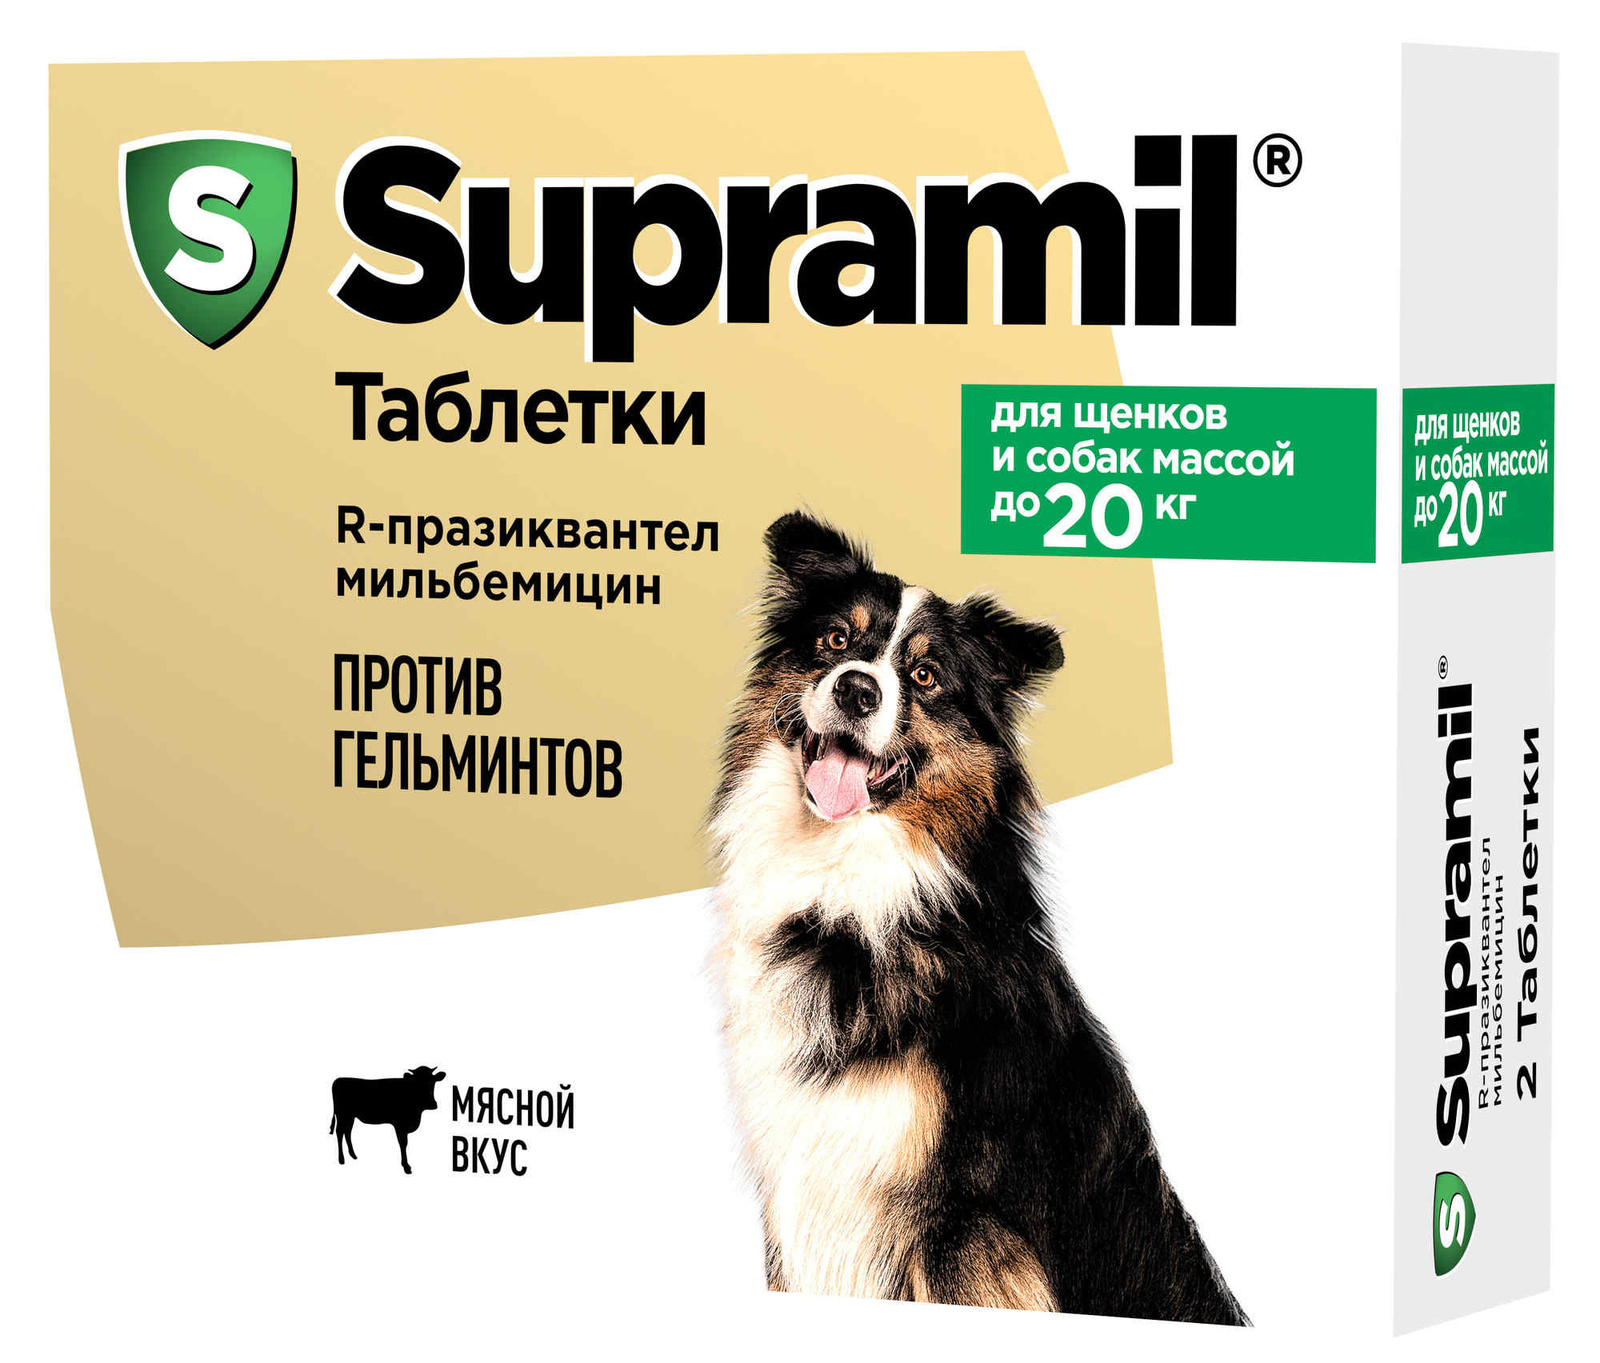 Астрафарм Астрафарм антигельминтный препарат Supramil для щенков и собак массой до 20 кг, таблетки (2 таб.) крка жевательные таблетки кладакса антибактериальный препарат широкого спектра 250 мг мг 0 03 кг 3 штуки